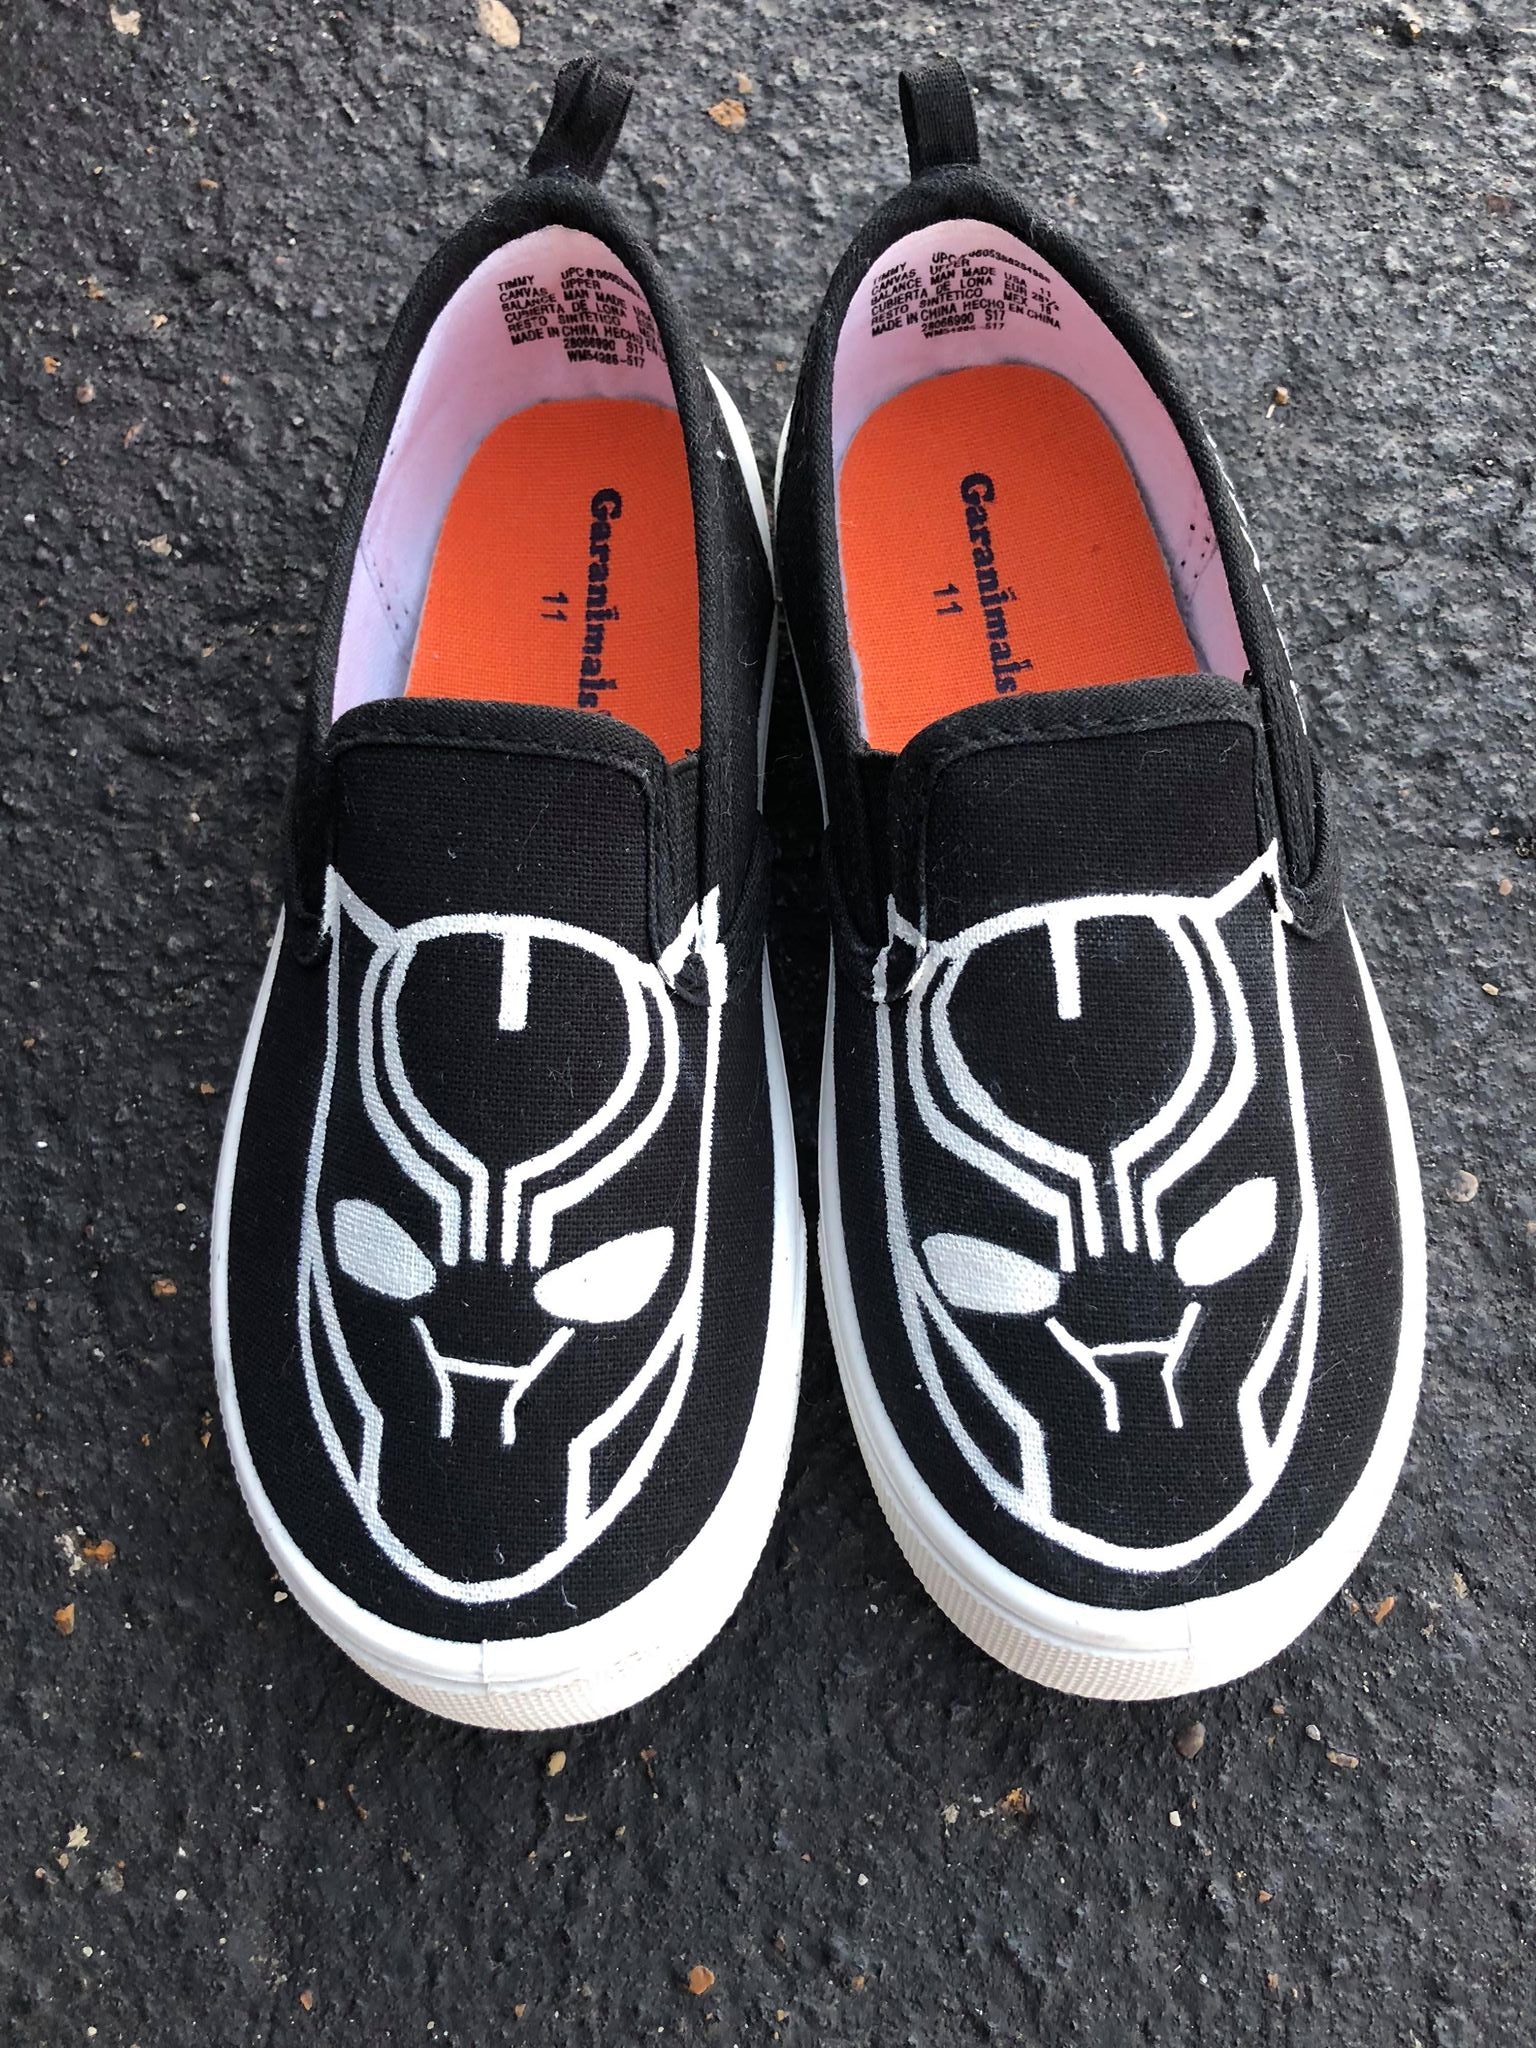 Black Panther - Custom Painted Vans - Vans Slip-On - Vans Tie P – Merakicks